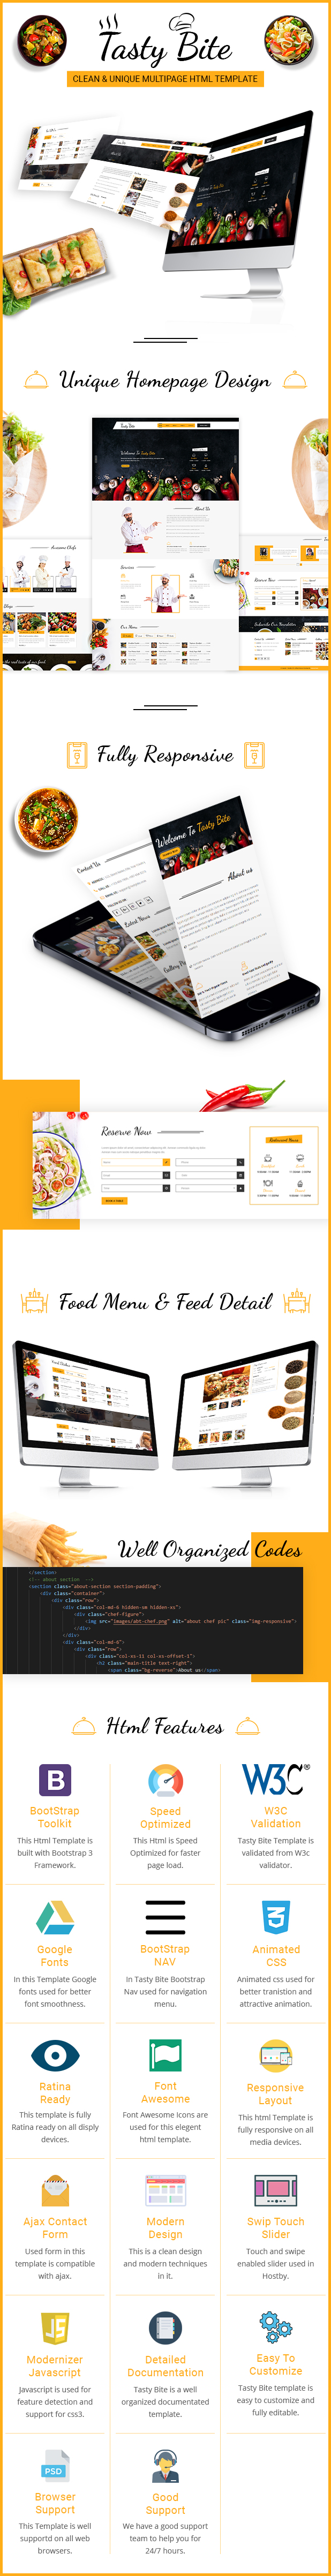 Tastybite Food Restaurant Bootstrap HTML5 Template